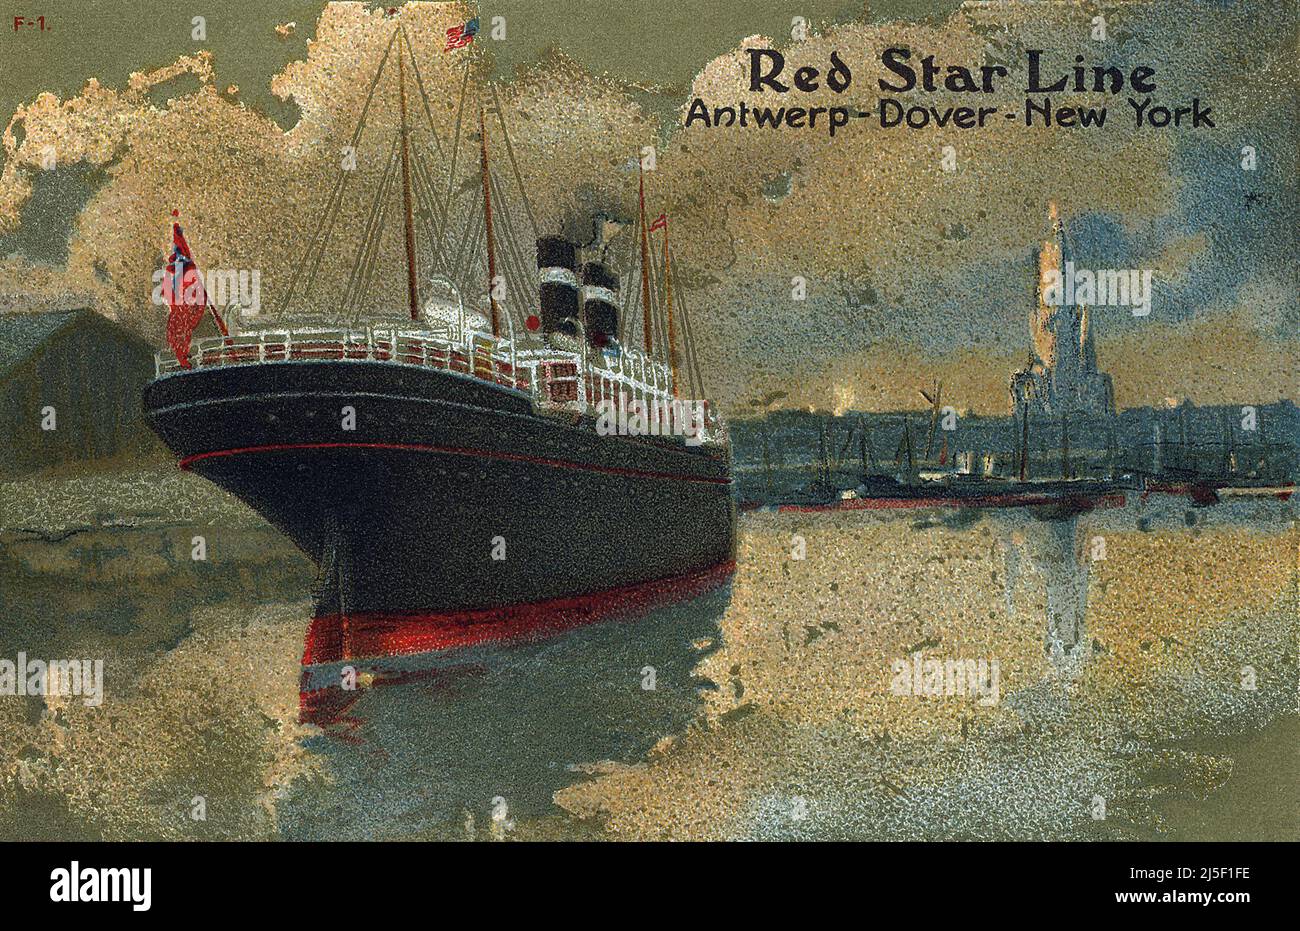 Cartolina Vintage che promuove i servizi di spedizione Red Star Line tra Anversa, dover e New York. Foto Stock